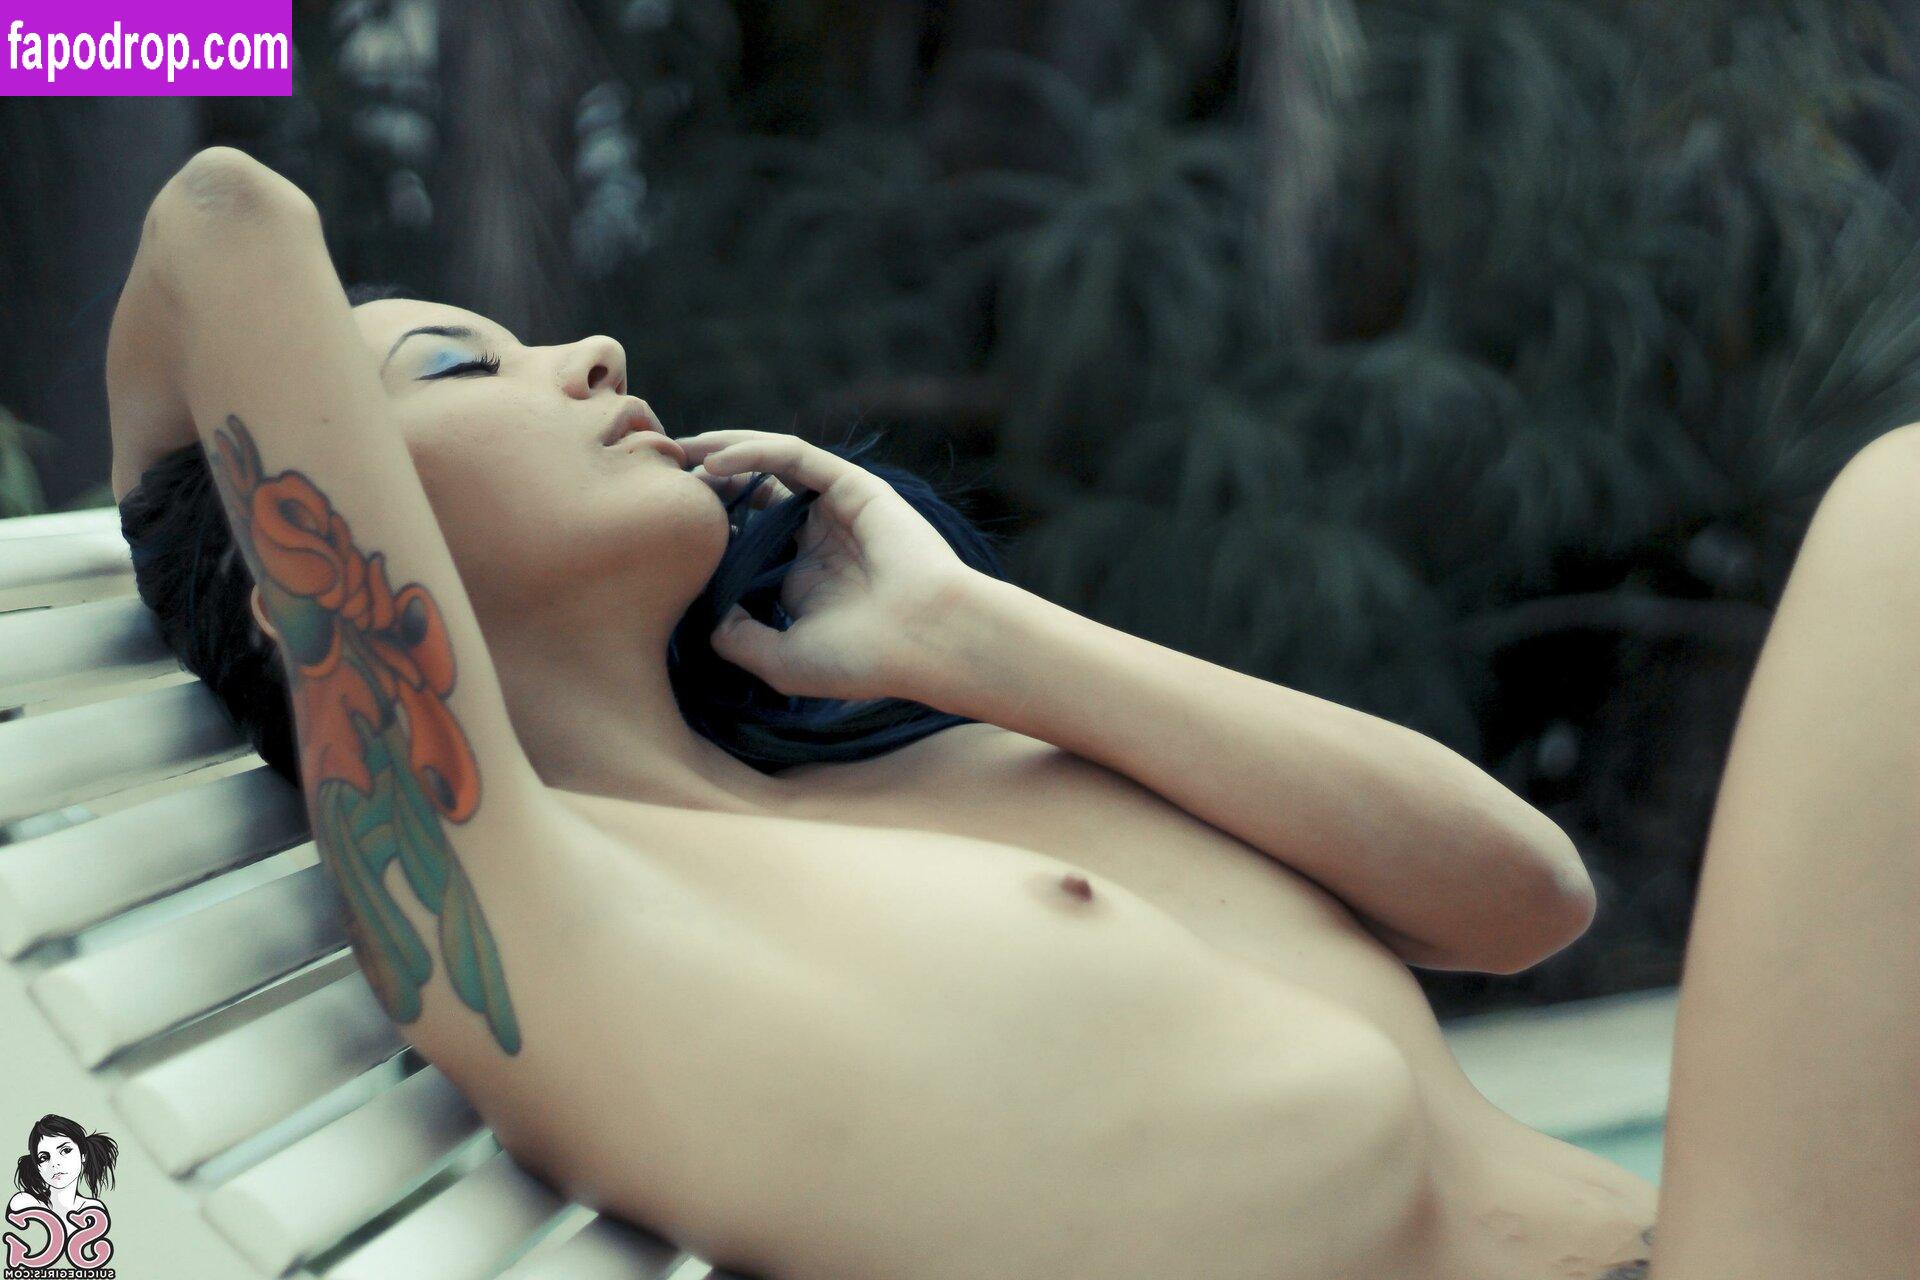 Karine Moraes / Arn1nn_ leak of nude photo #0080 from OnlyFans or Patreon